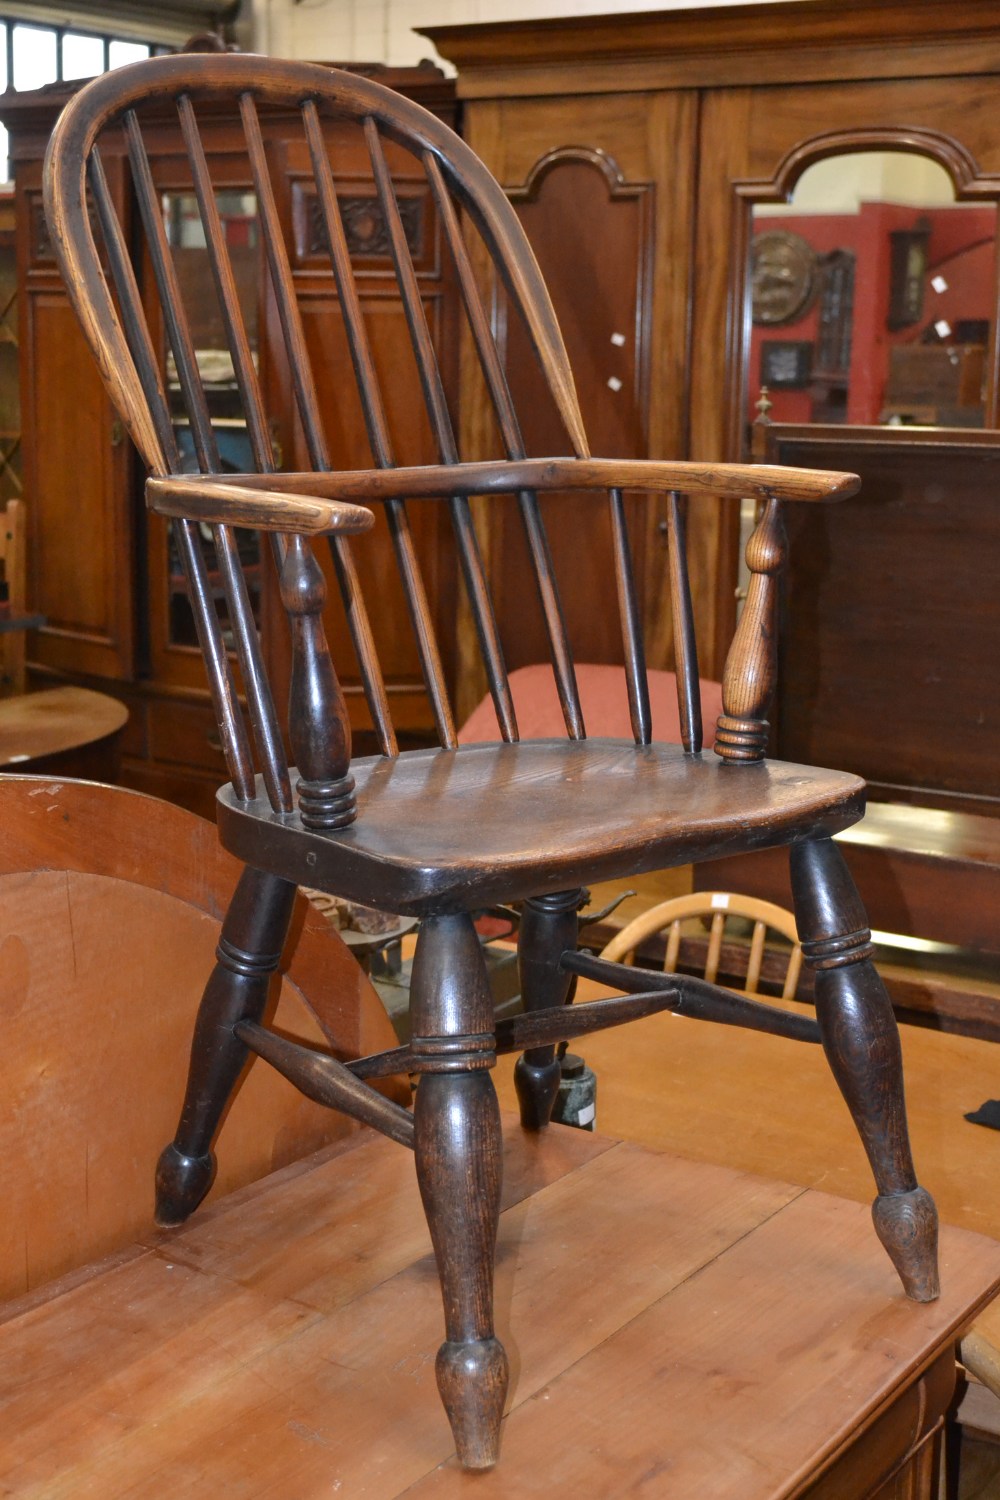 A 19th century elm Windsor chair